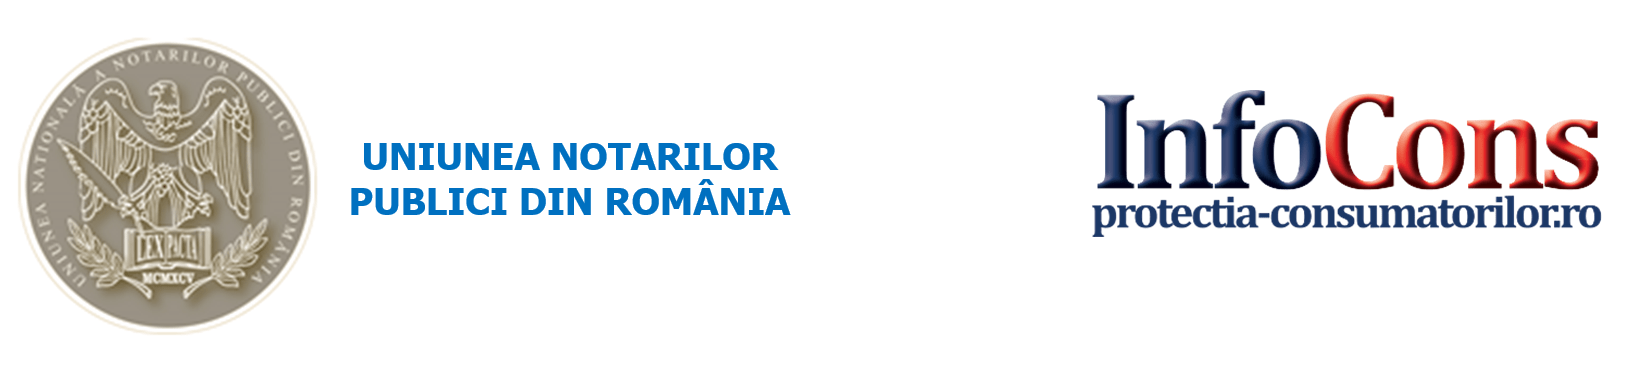 Uniunea Notarilor Publici din România; InfoCons - infocons.ro